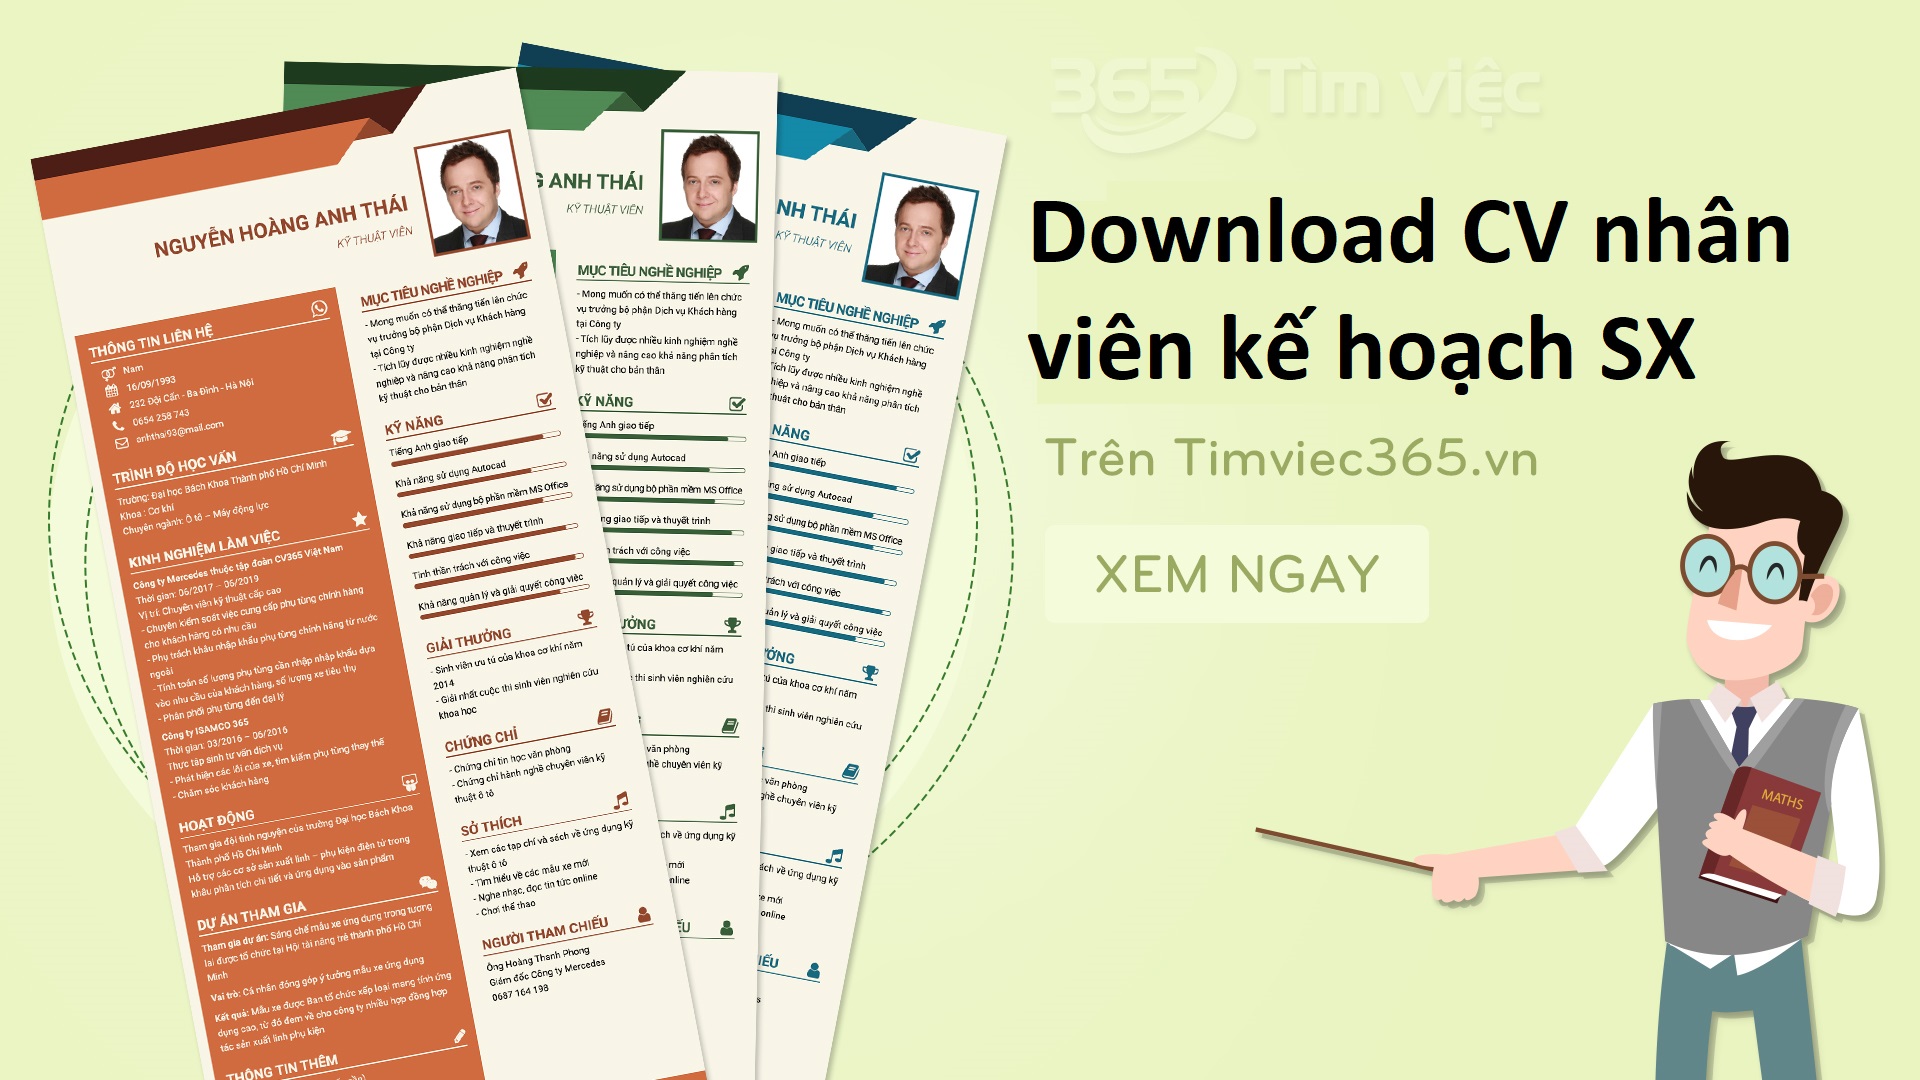 Download CV nhân viên kế hoạch sản xuất tại timviec365.vn, bạn đã thử chưa